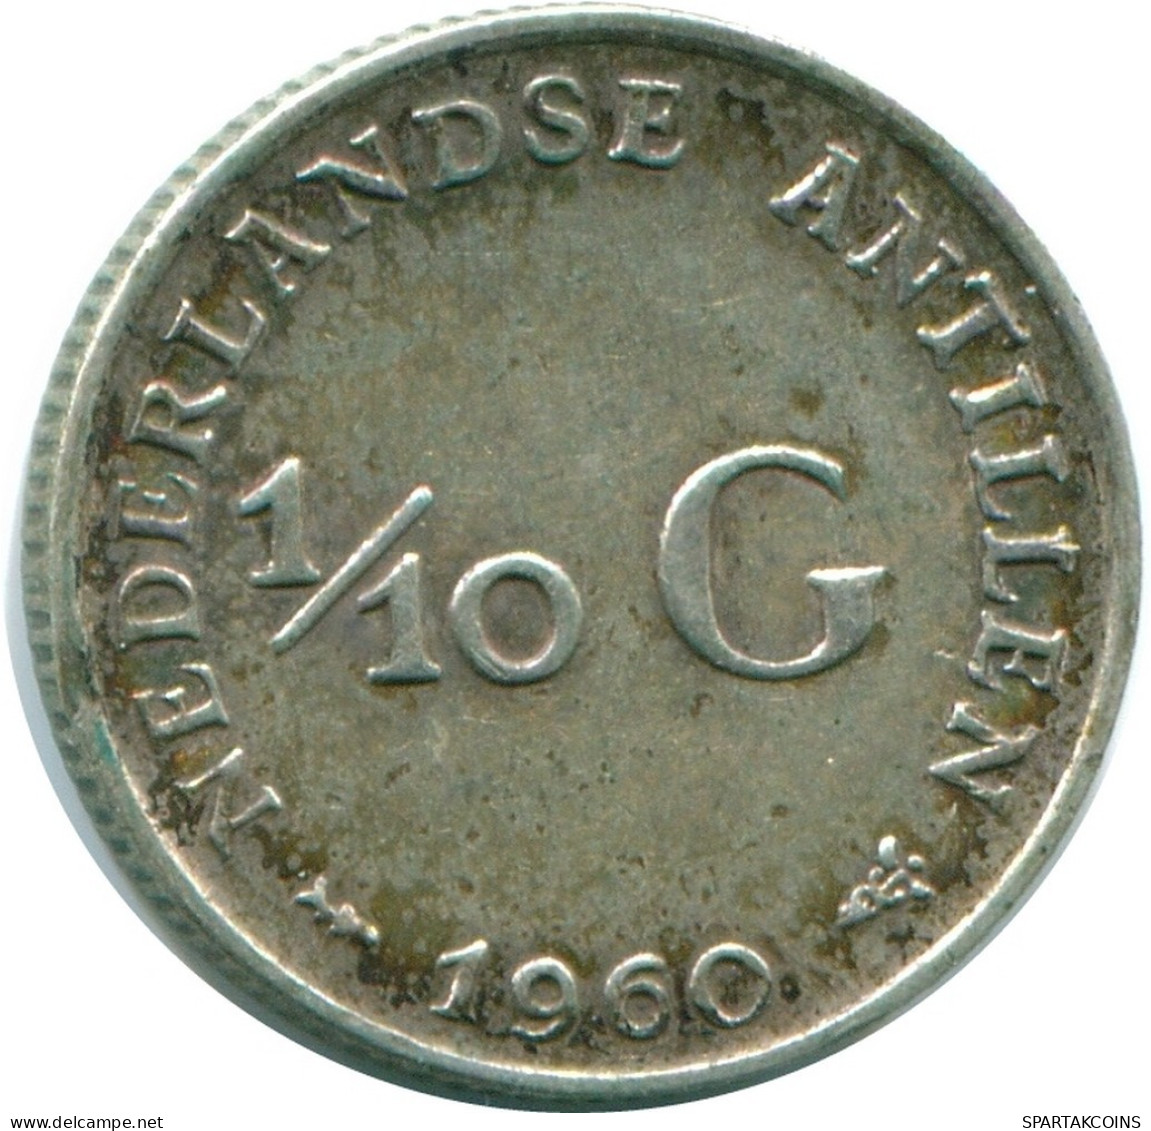 1/10 GULDEN 1960 NIEDERLÄNDISCHE ANTILLEN SILBER Koloniale Münze #NL12315.3.D.A - Antilles Néerlandaises